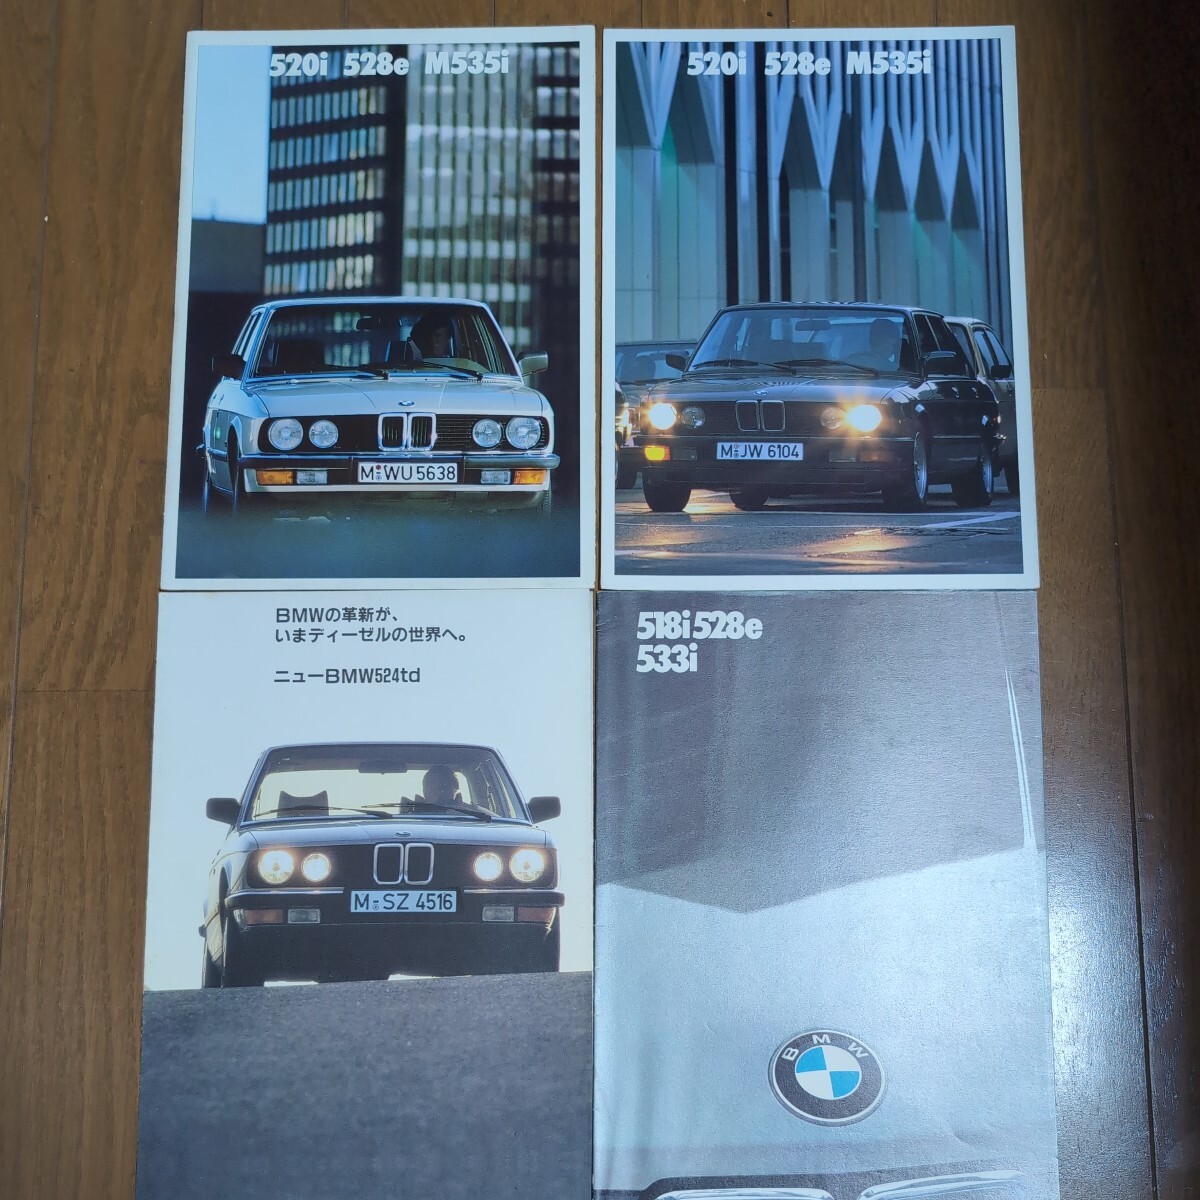 BMW e28 catalog 520 528e 533i M535i 524td